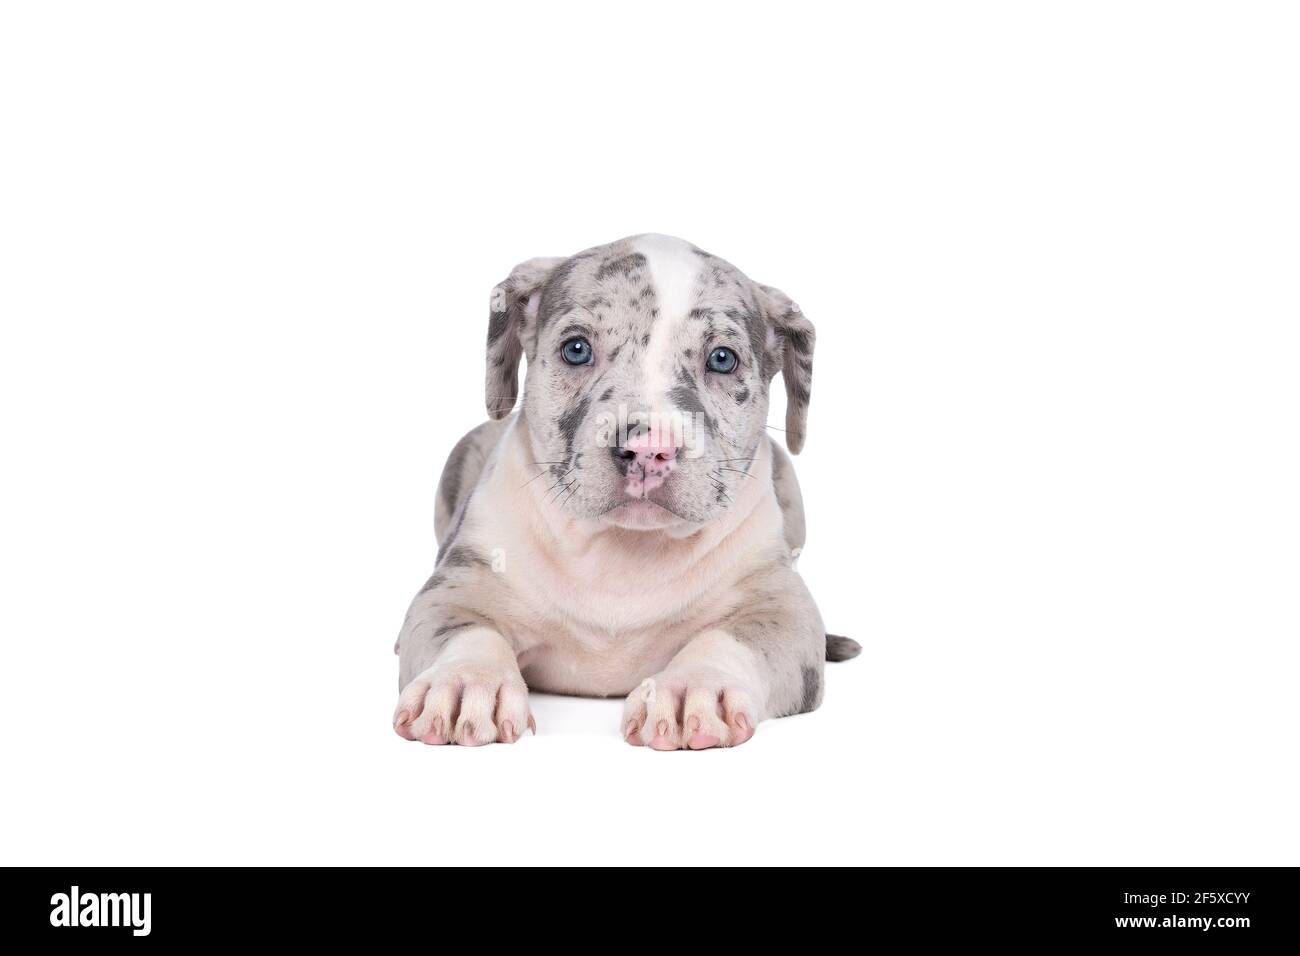 Un pup américain de Bully ou de Bulldog de race pure, avec des fourrures bleues et blanches, isolé sur un fond blanc Banque D'Images